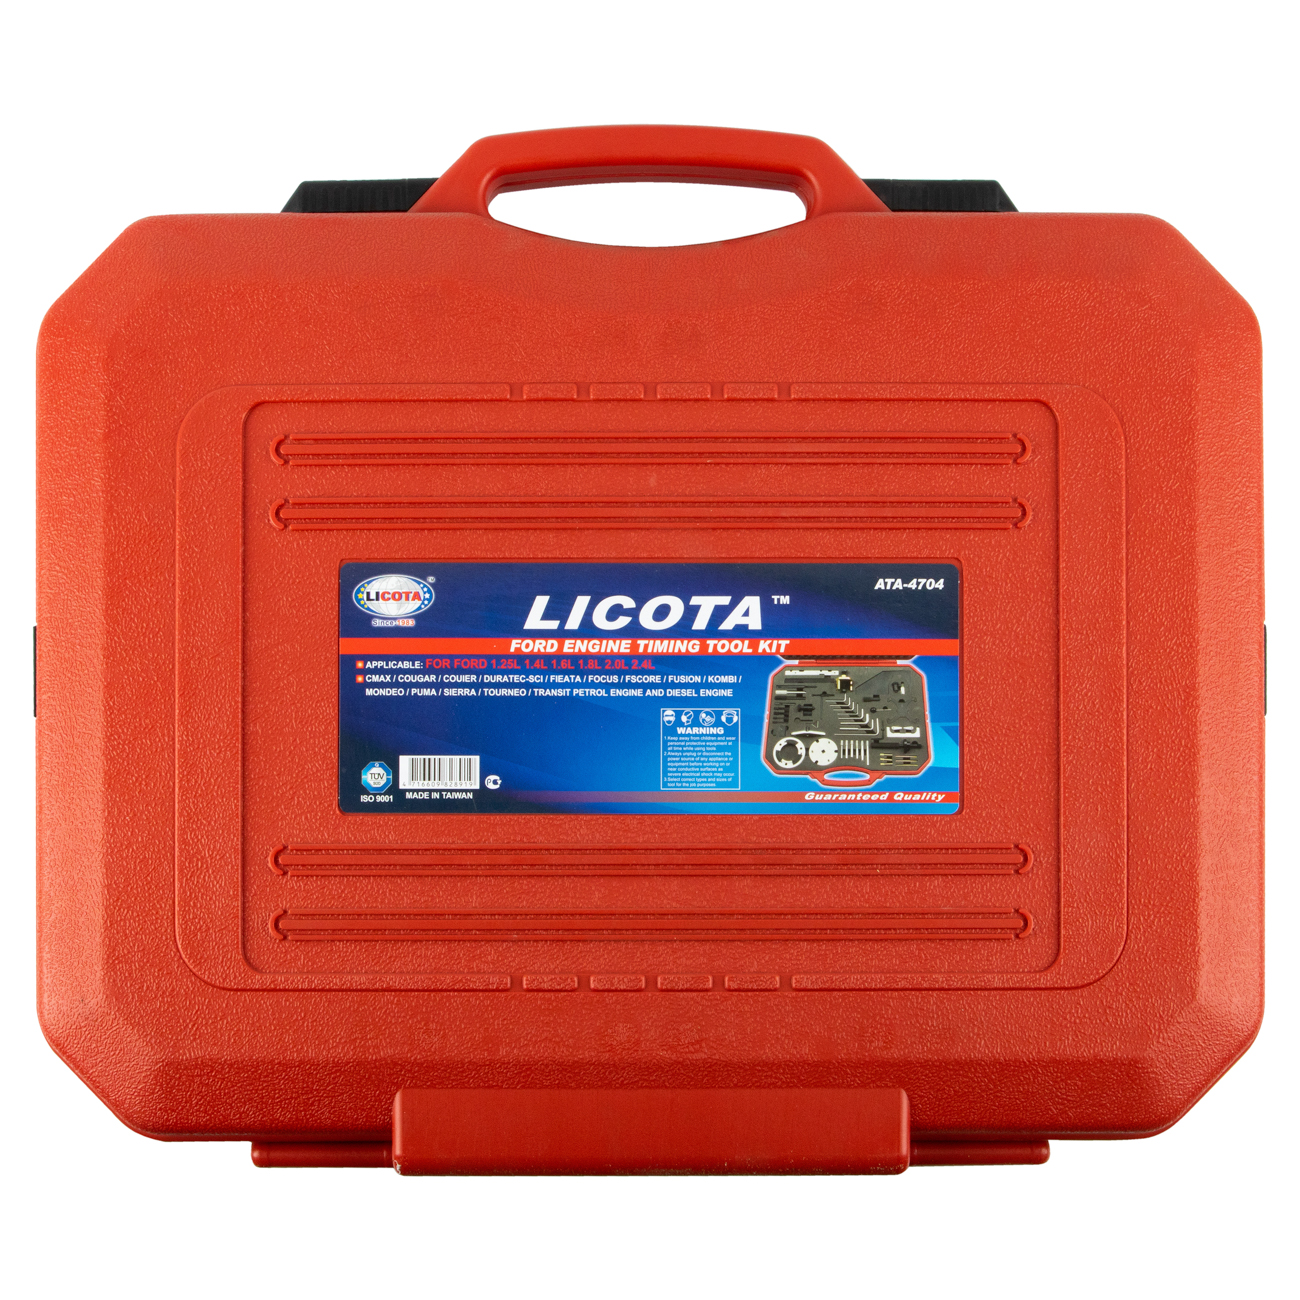 Набор  для регулировки фаз ГРМ бензиновых и дизельных двигателей FORD, 51пр. Licota  ATA-4704_1